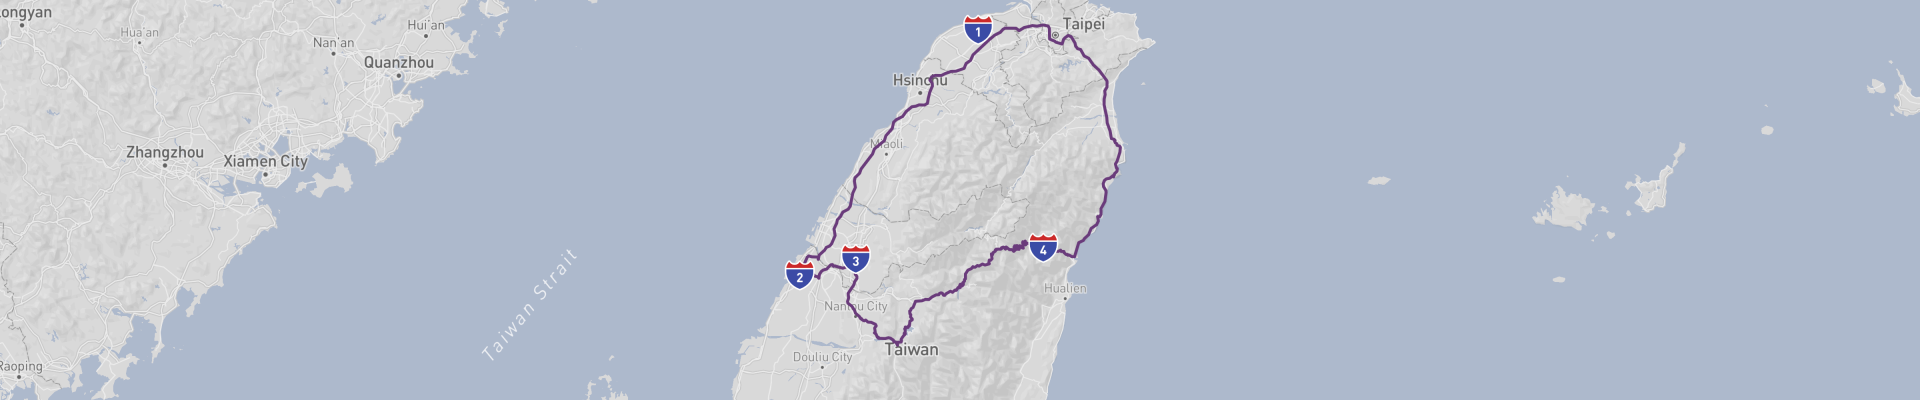 Taiwan Highlights Roadtrip